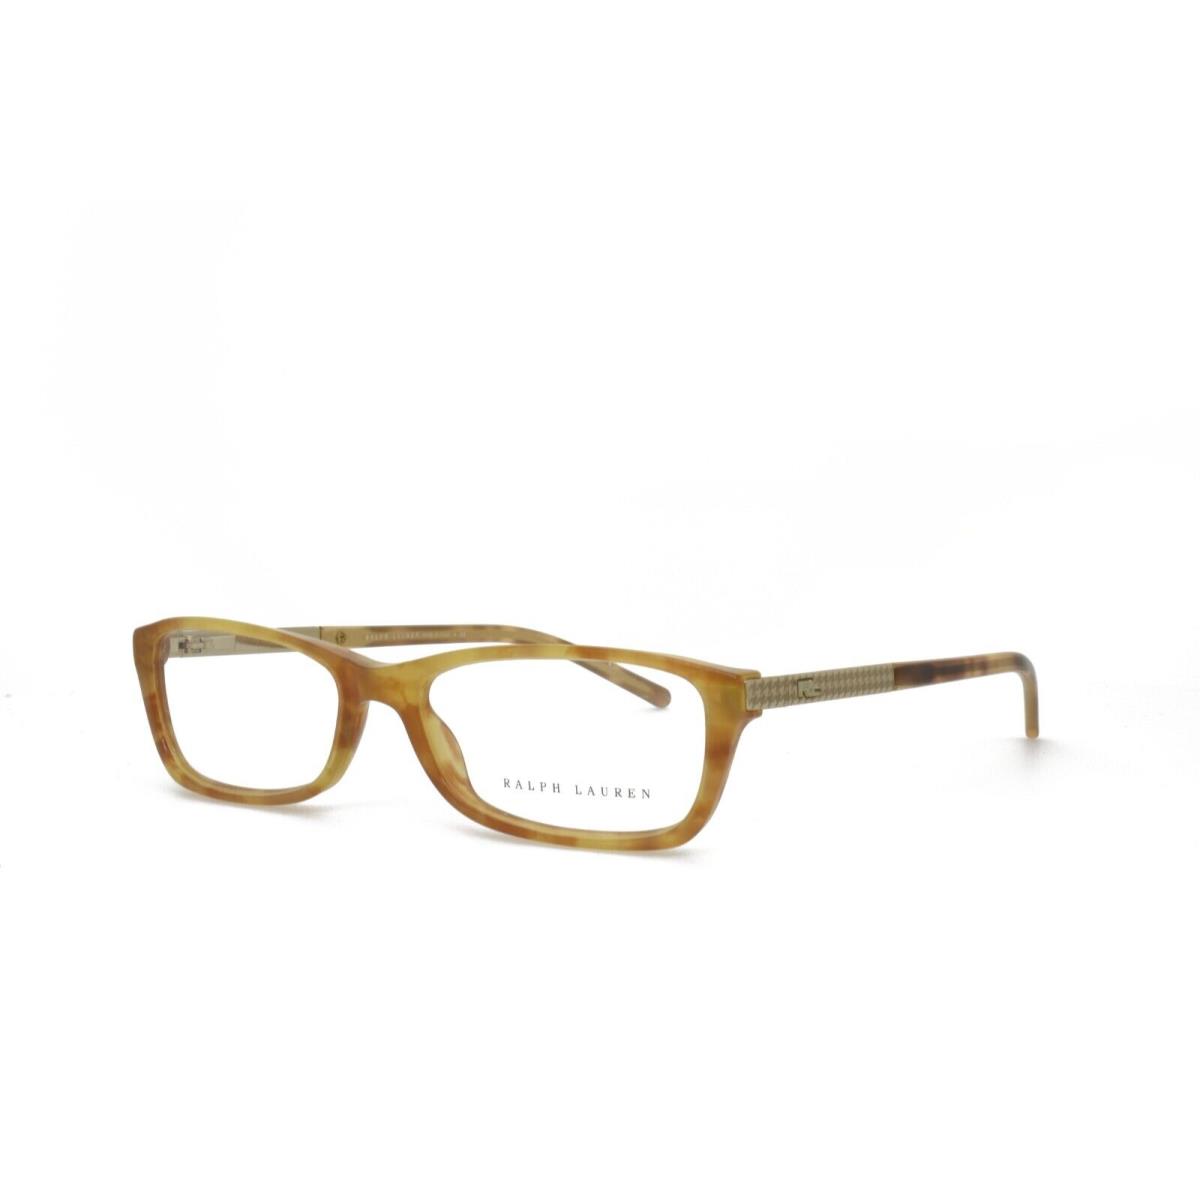 Ralph Lauren 6077 5304 52-15-135 Light Brown Eyeglasses Frames